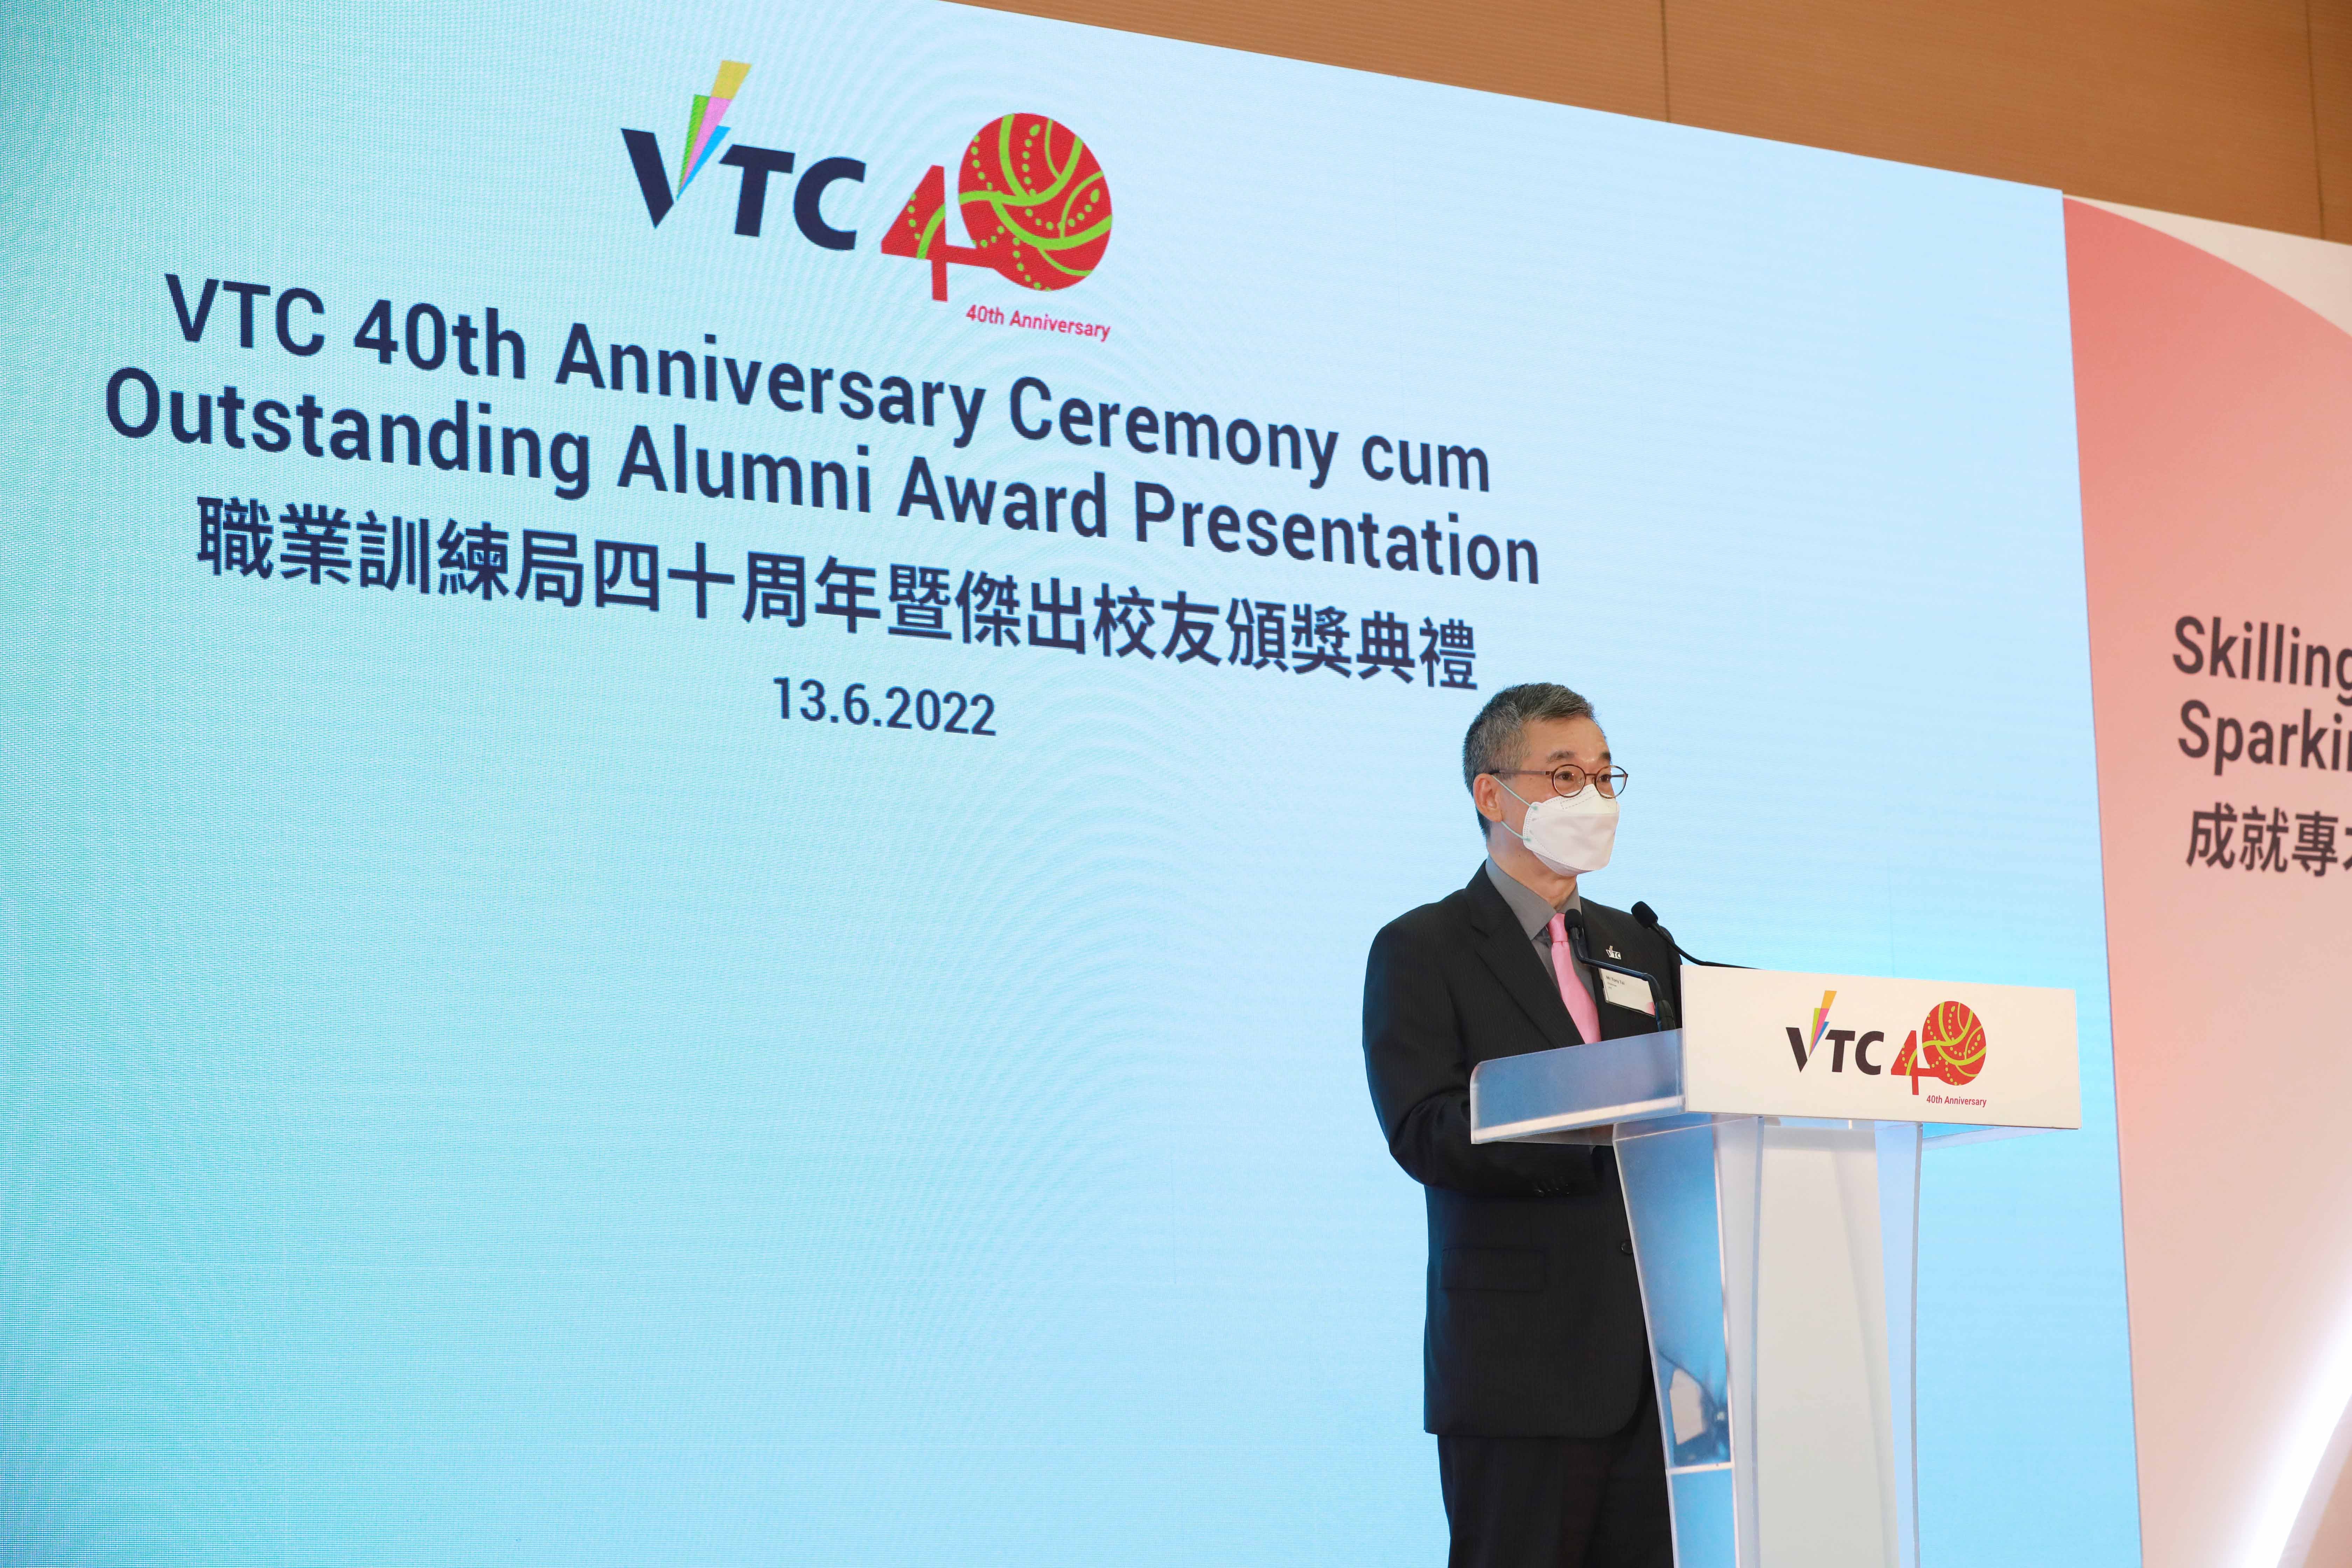 VTC 40 周年暨傑出校友頒獎典禮
成就專才 啟發創新